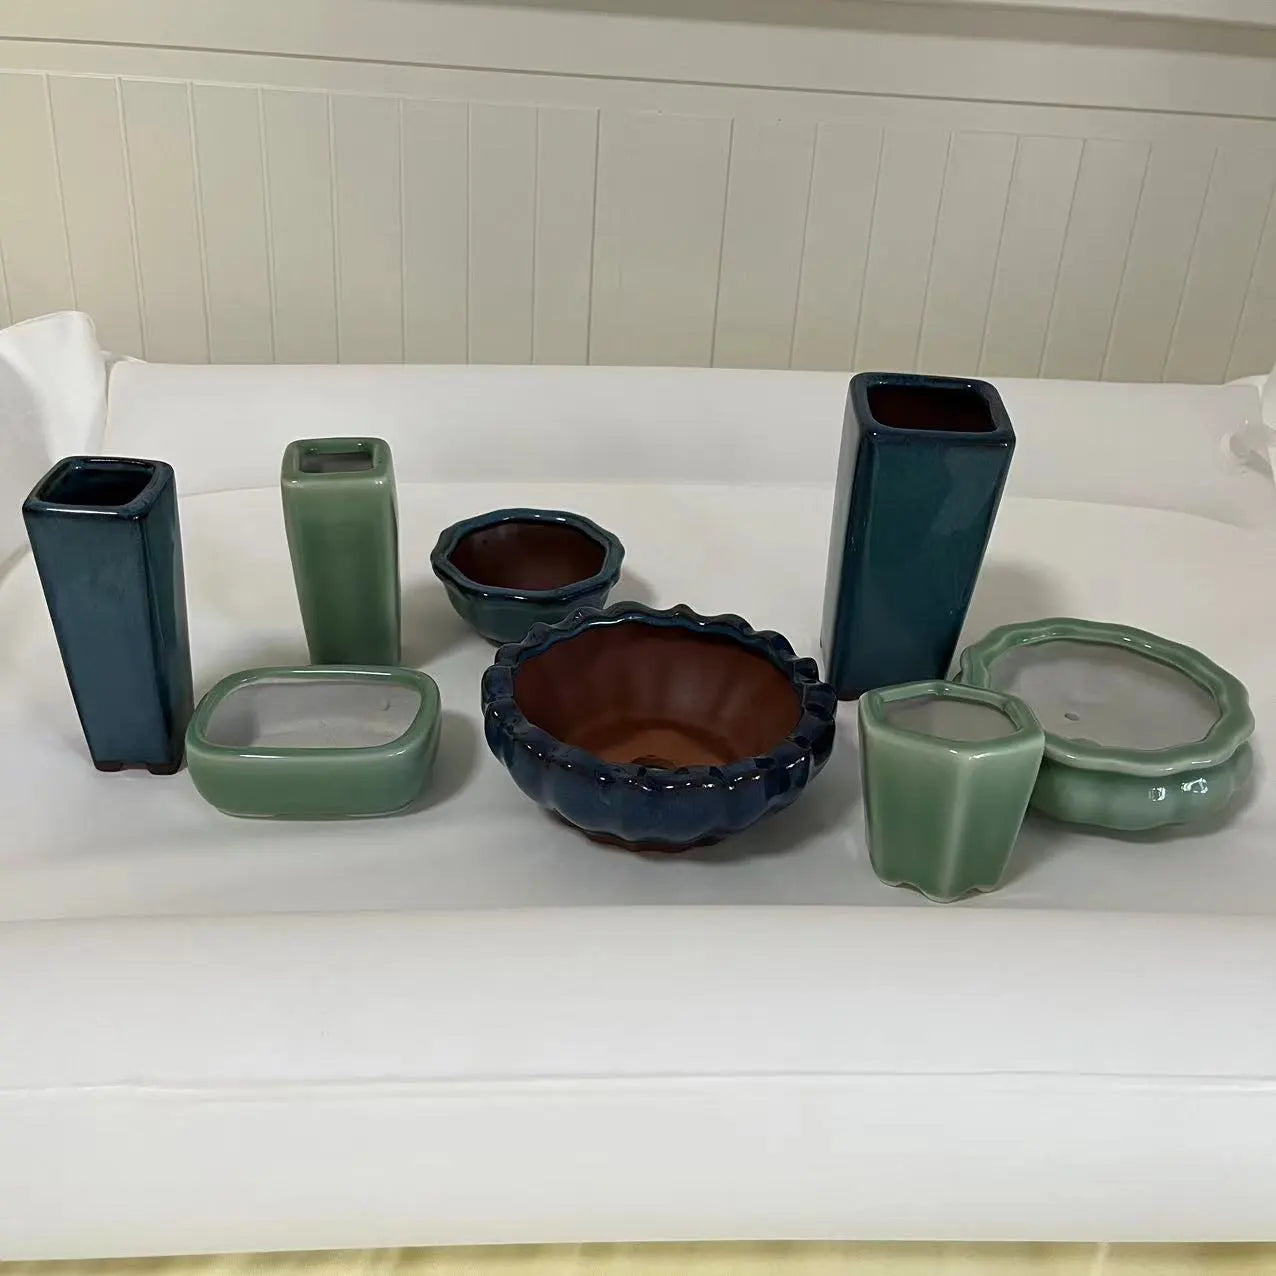 8 Arten von Bonsai-Töpfen im chinesischen Stil, atmungsaktive Steingut-Bonsai-Töpfe mit Löchern, Bonsai-Trainings-Blumentopf, Keramik-Handwerk